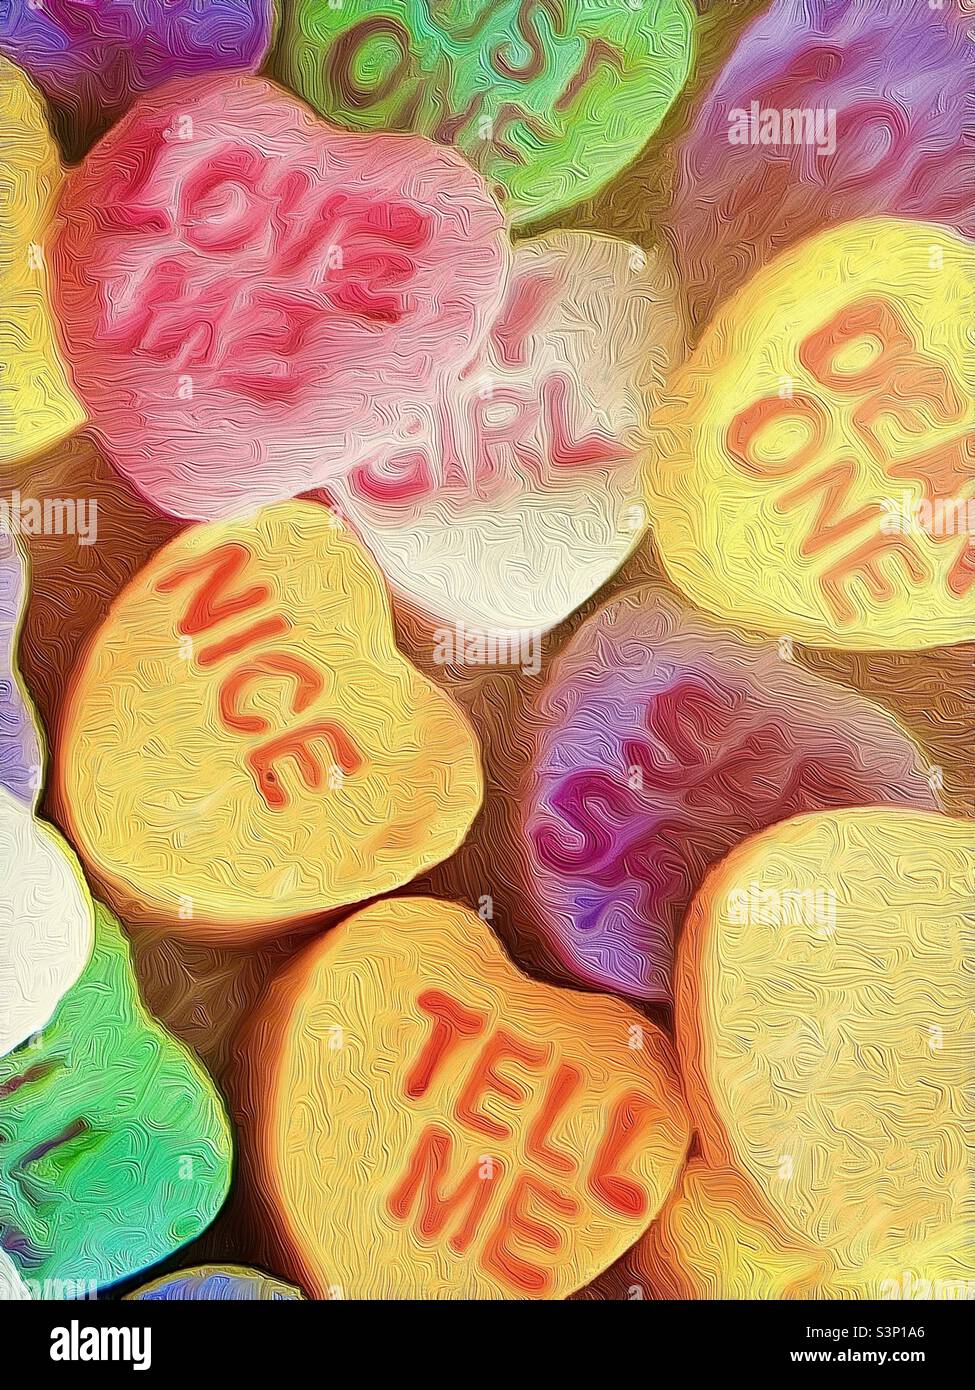 Cœur de bonbons de la Saint-Valentin avec messages de relation sentimentale. La photo a été modifiée pour créer une image texturée et de peinture. Banque D'Images